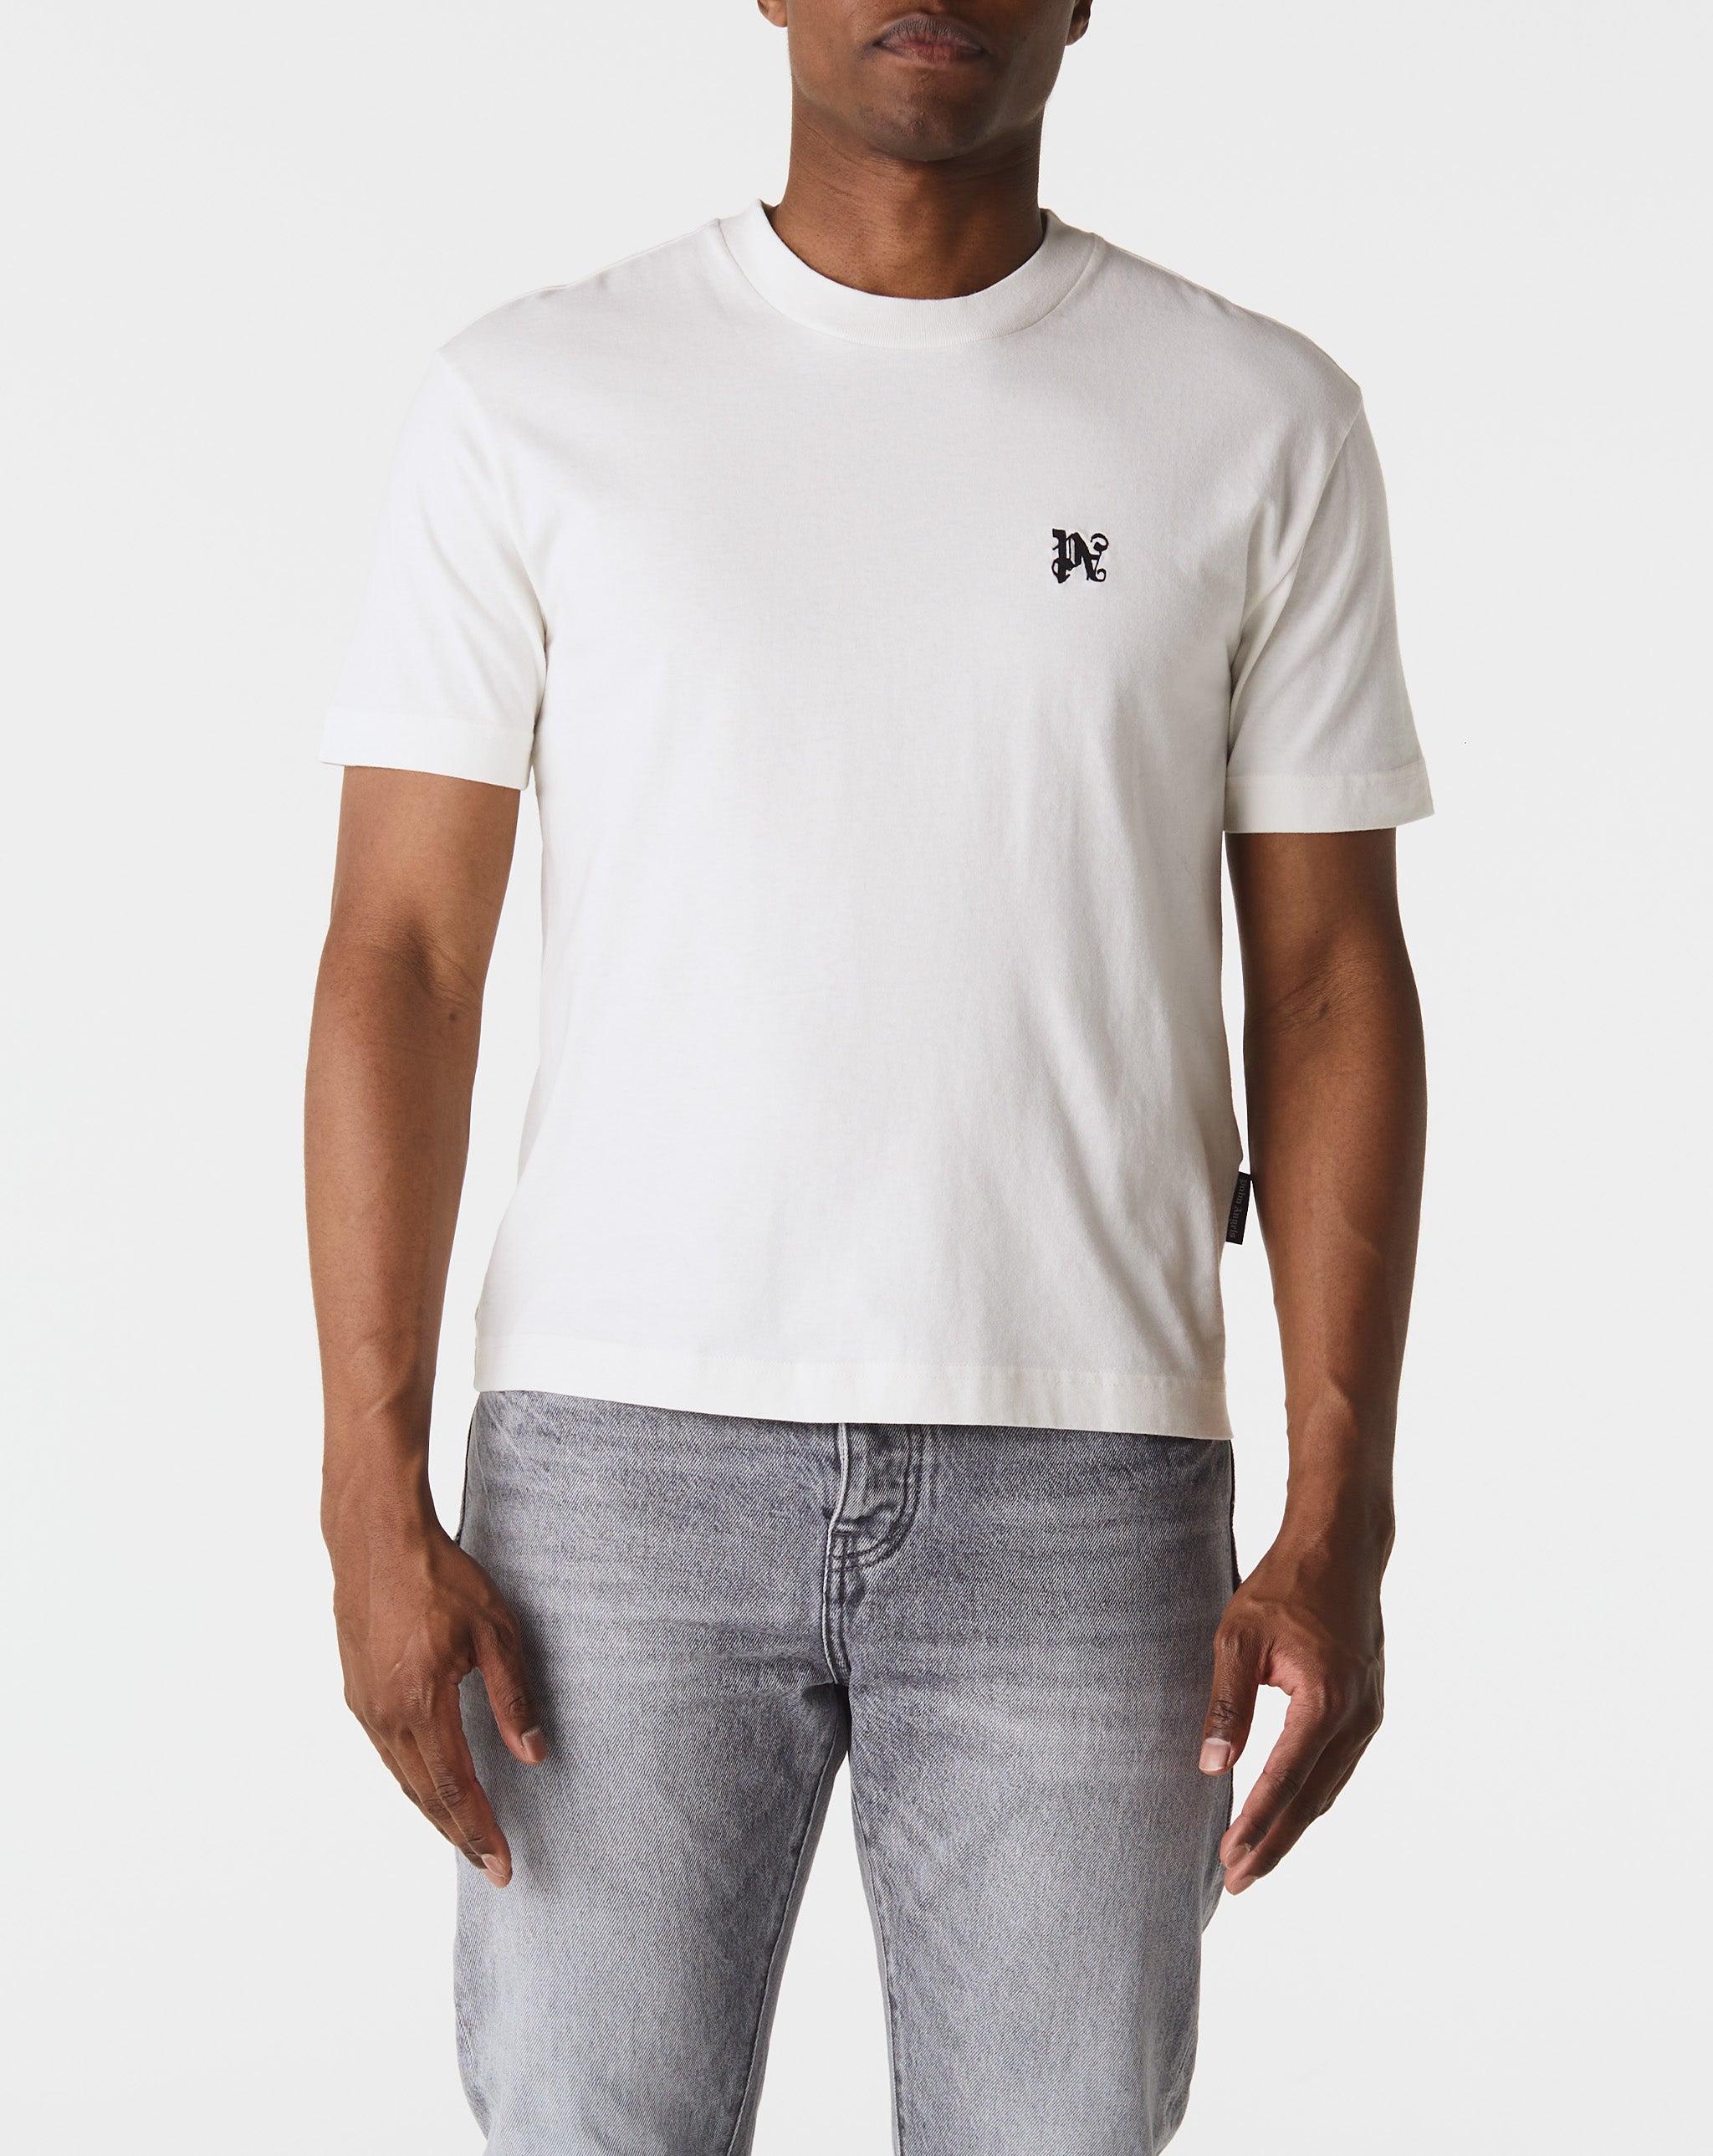 Palm Angels Monogram T-Shirt Tri-Pack  - Cheap Erlebniswelt-fliegenfischen Jordan outlet